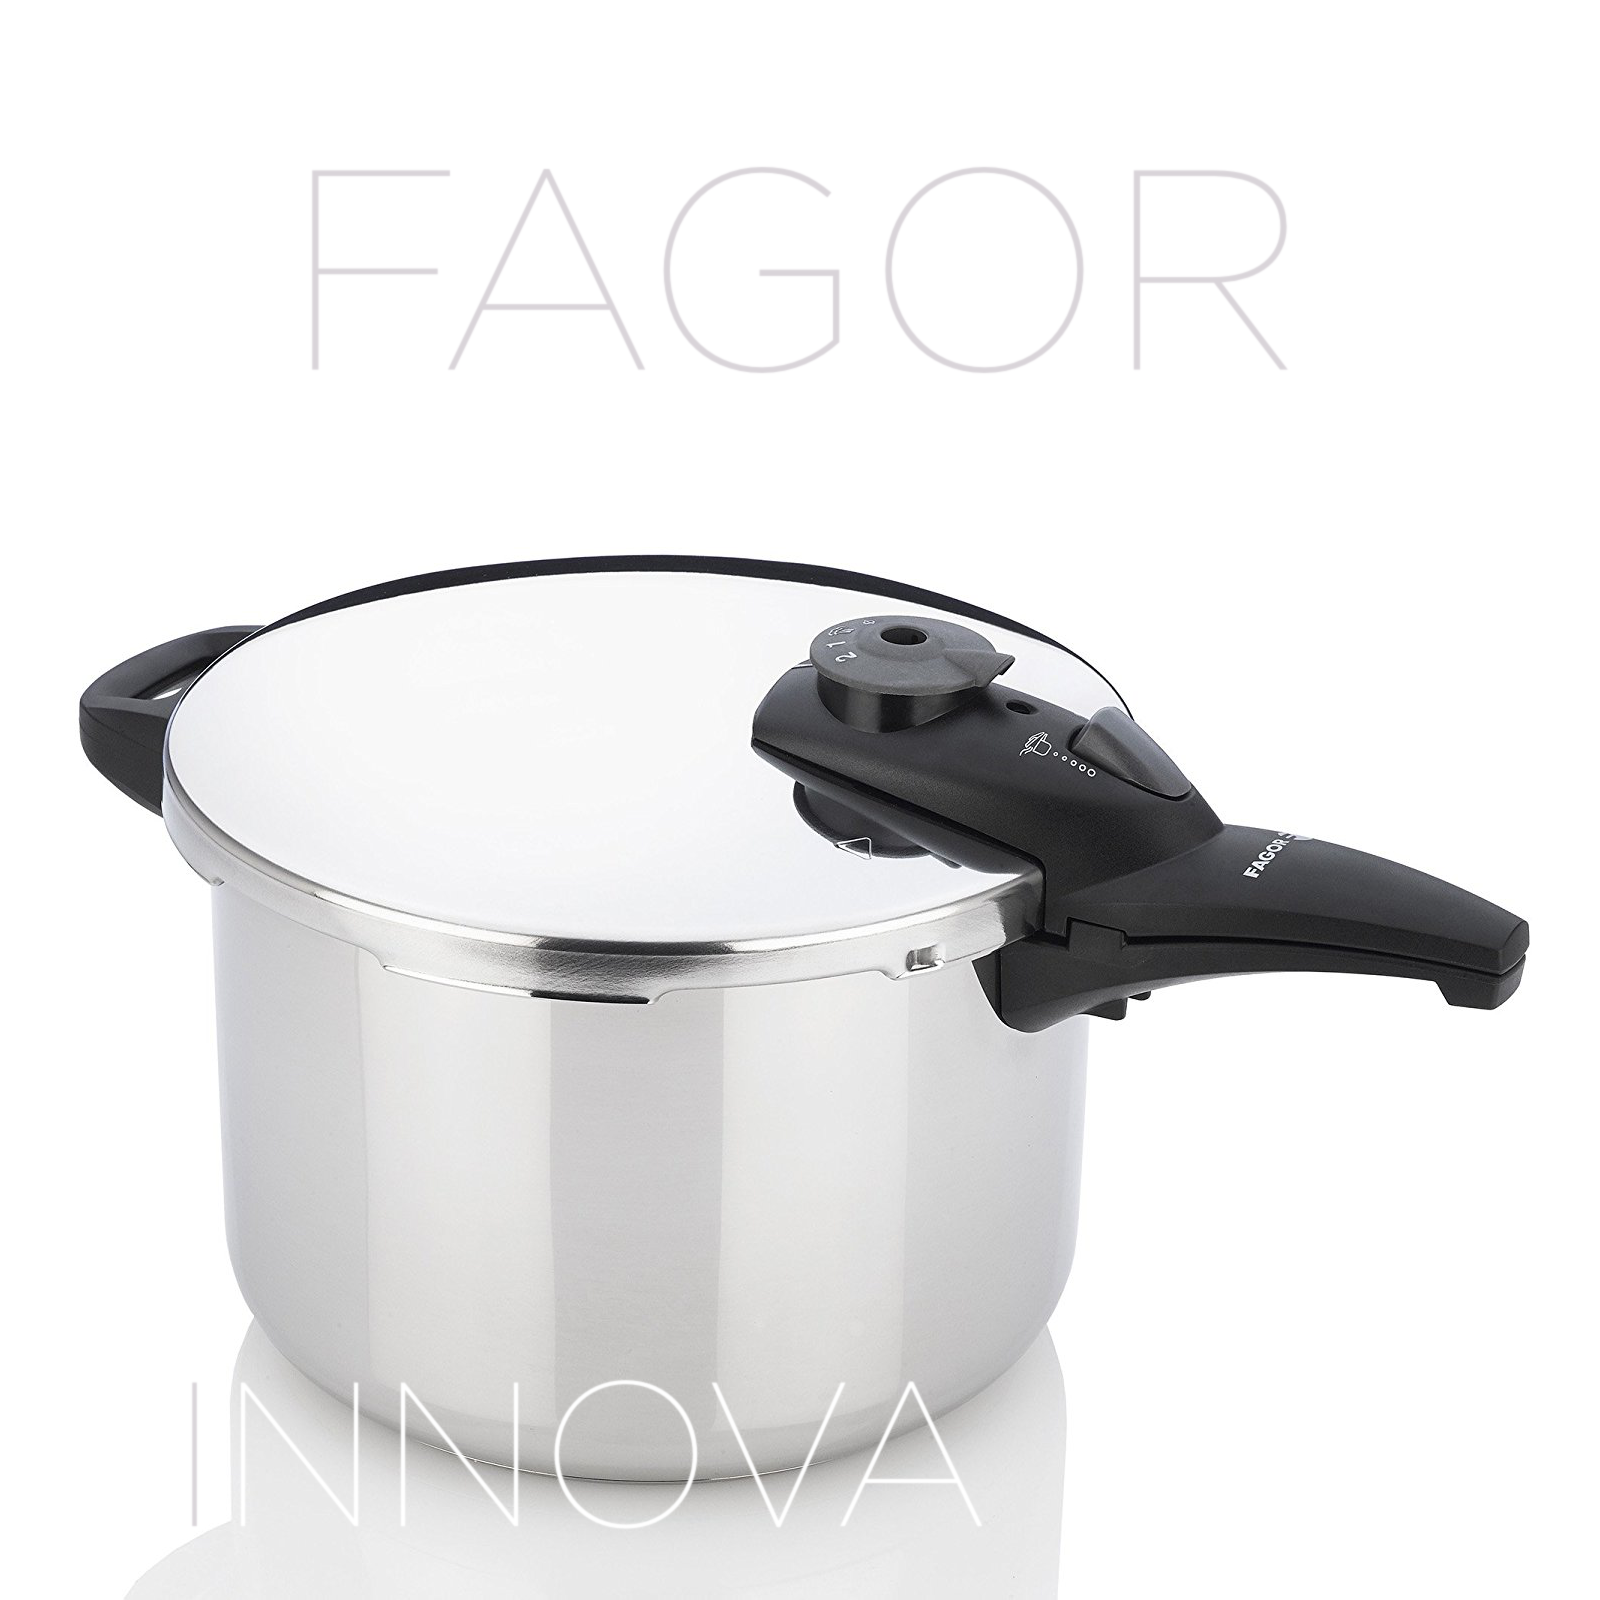 Fagor Duo 8 Quart Pressure Cooker